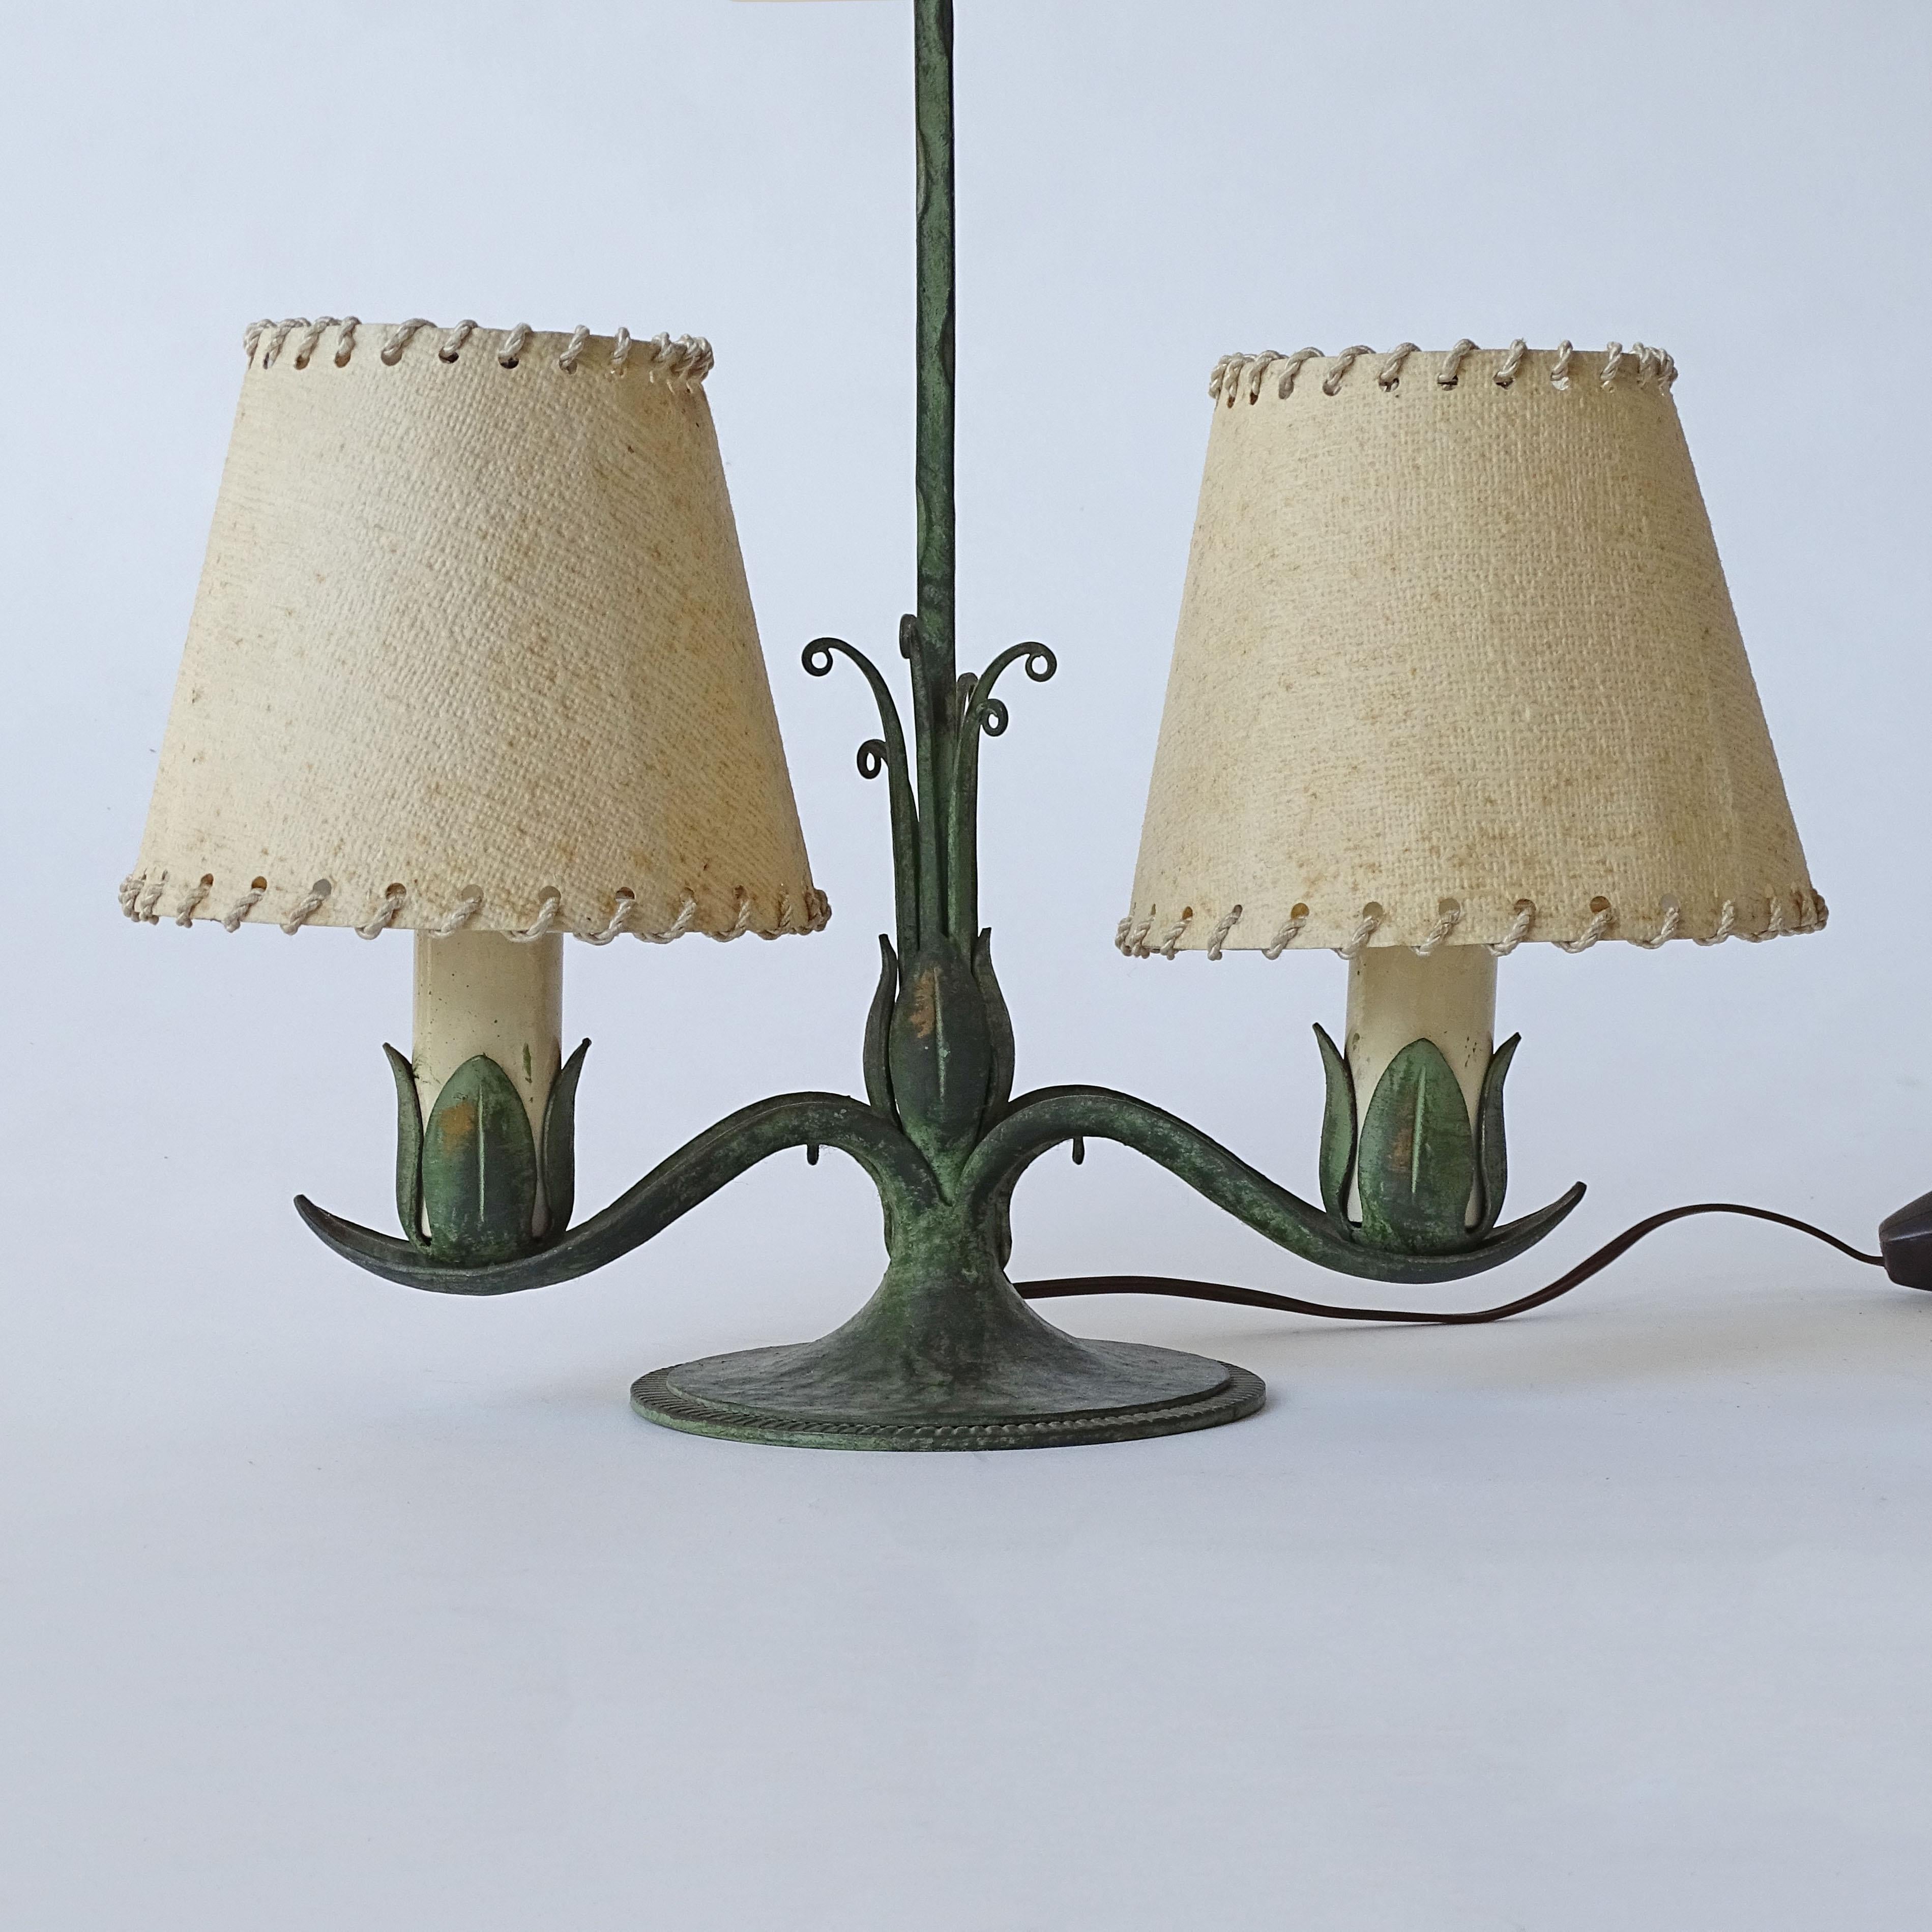 Lampe de table portative italienne en fer forgé des années 1940.
Porte deux ampoules
Attribué à Carlo Rizzarda.